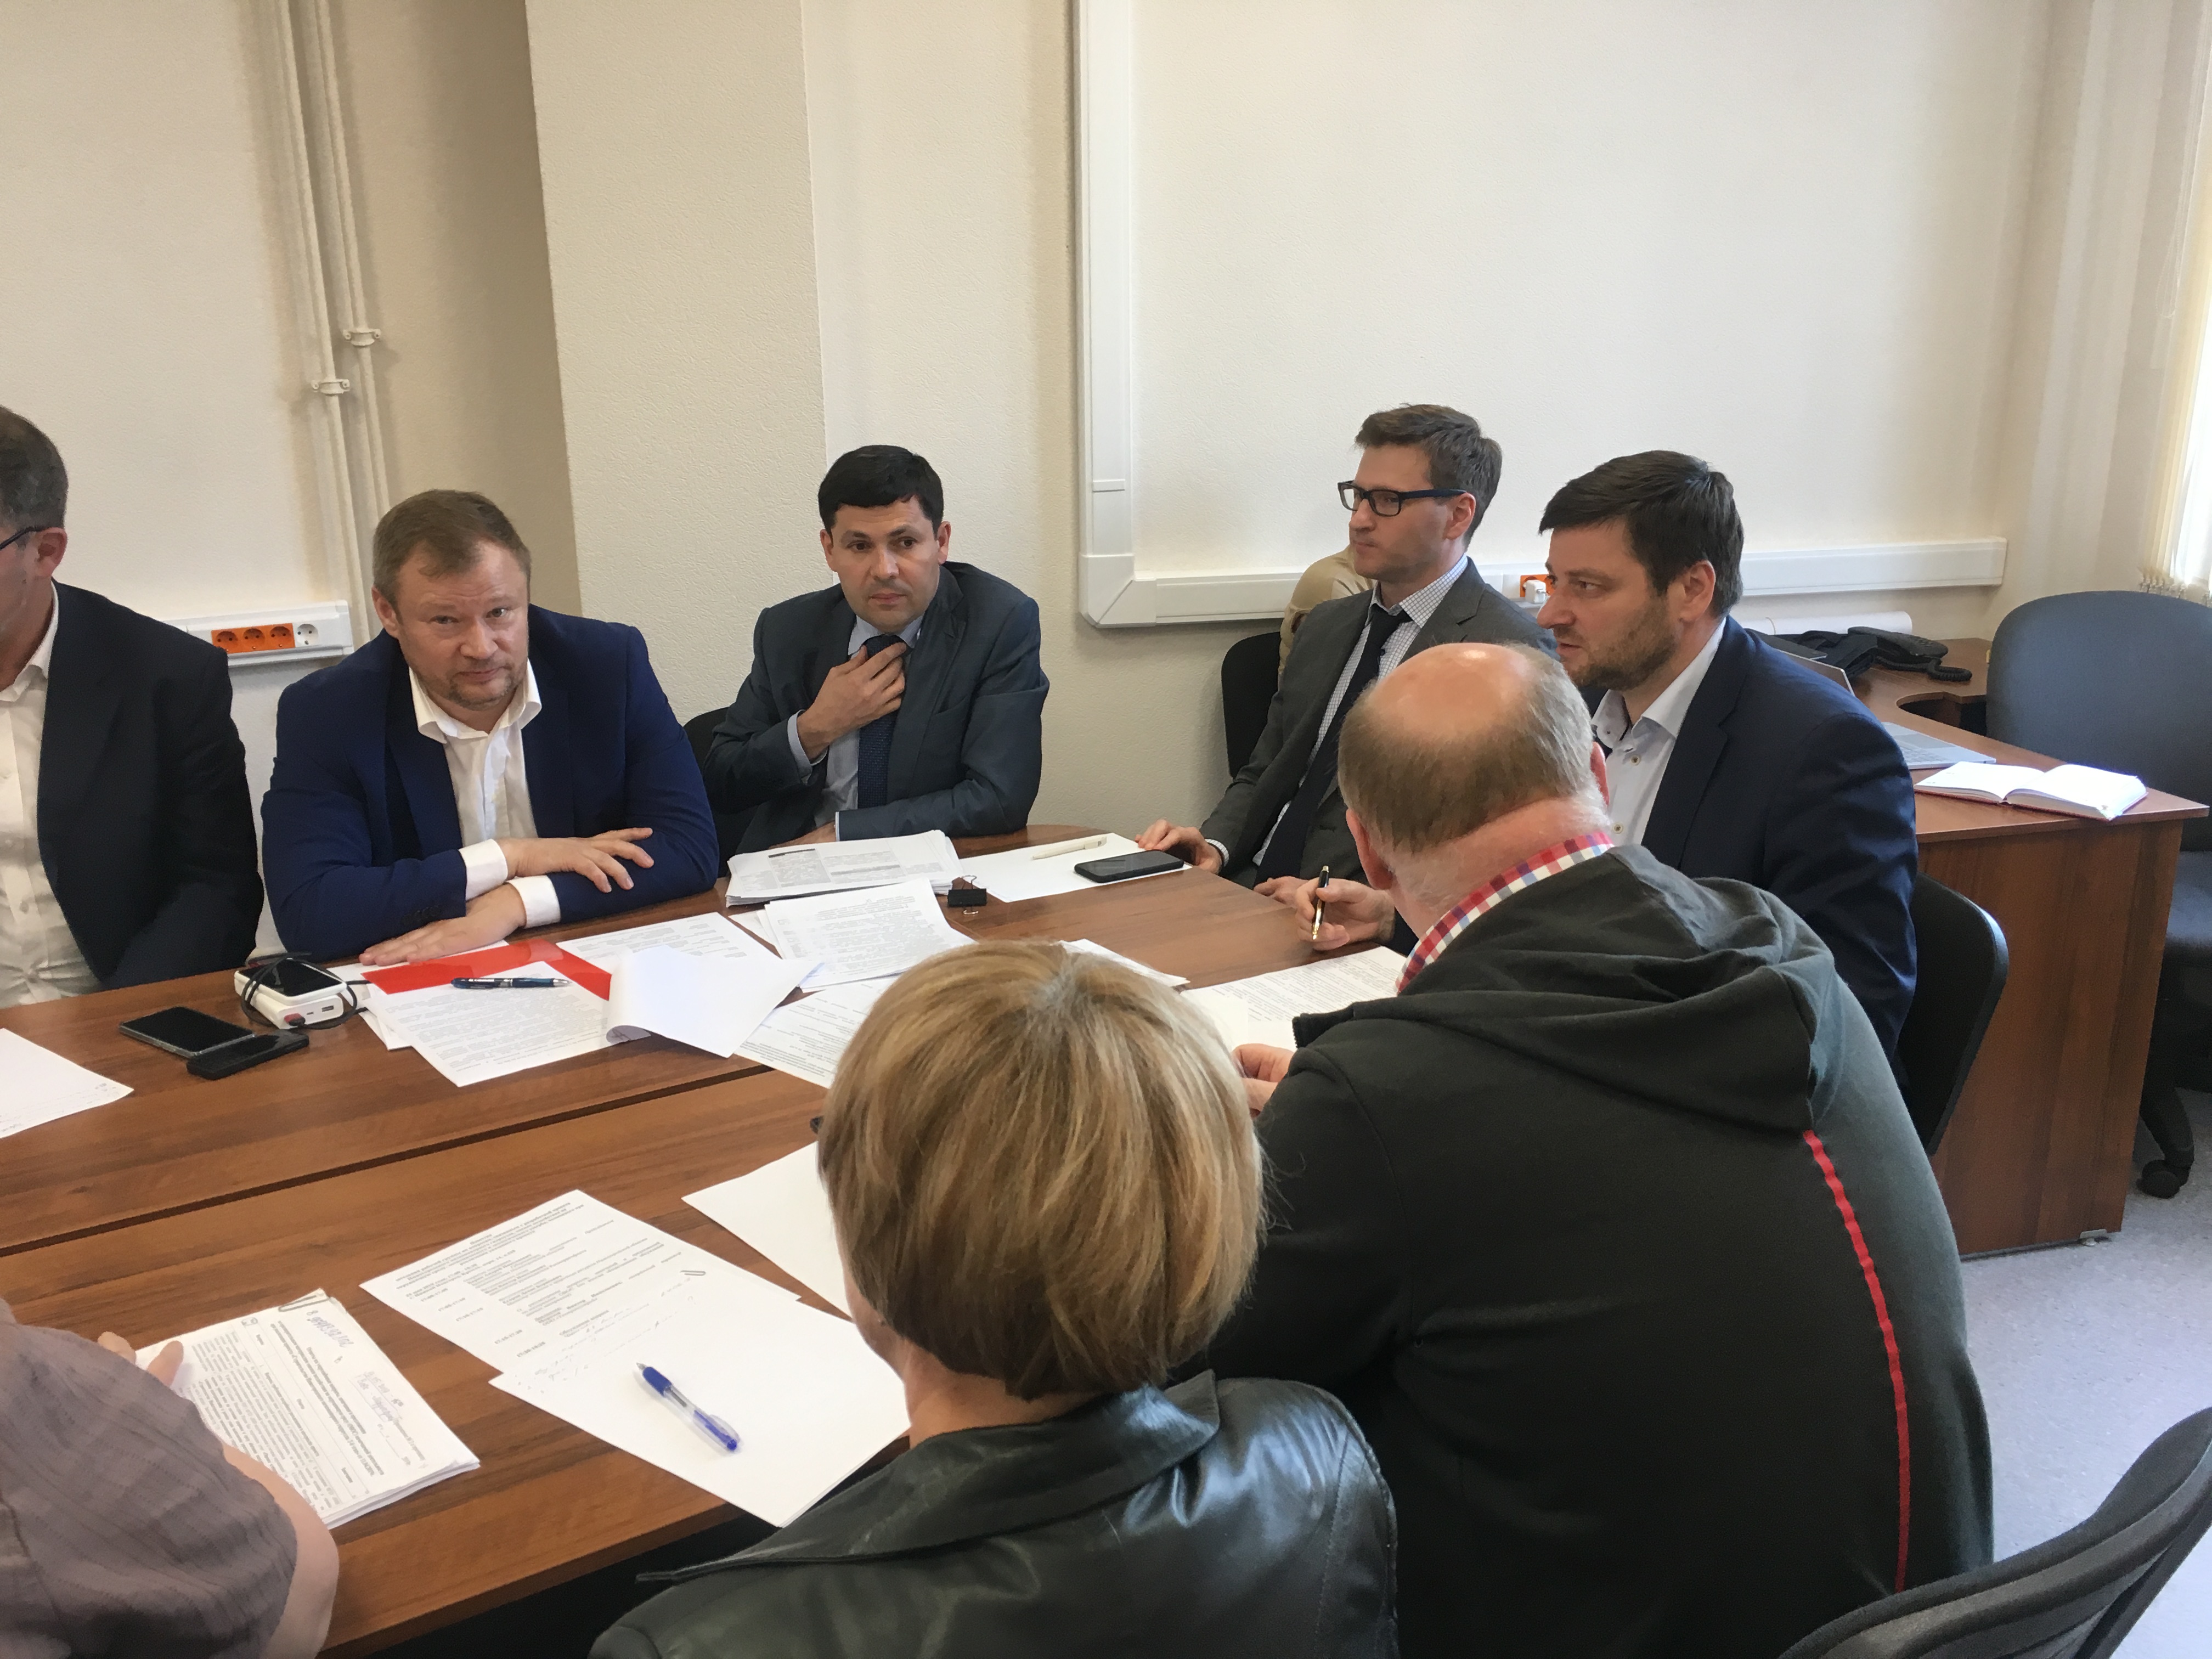 Альтернативные строительству низконапорного гидроузла проекты обсудили в Нижнем Новгороде